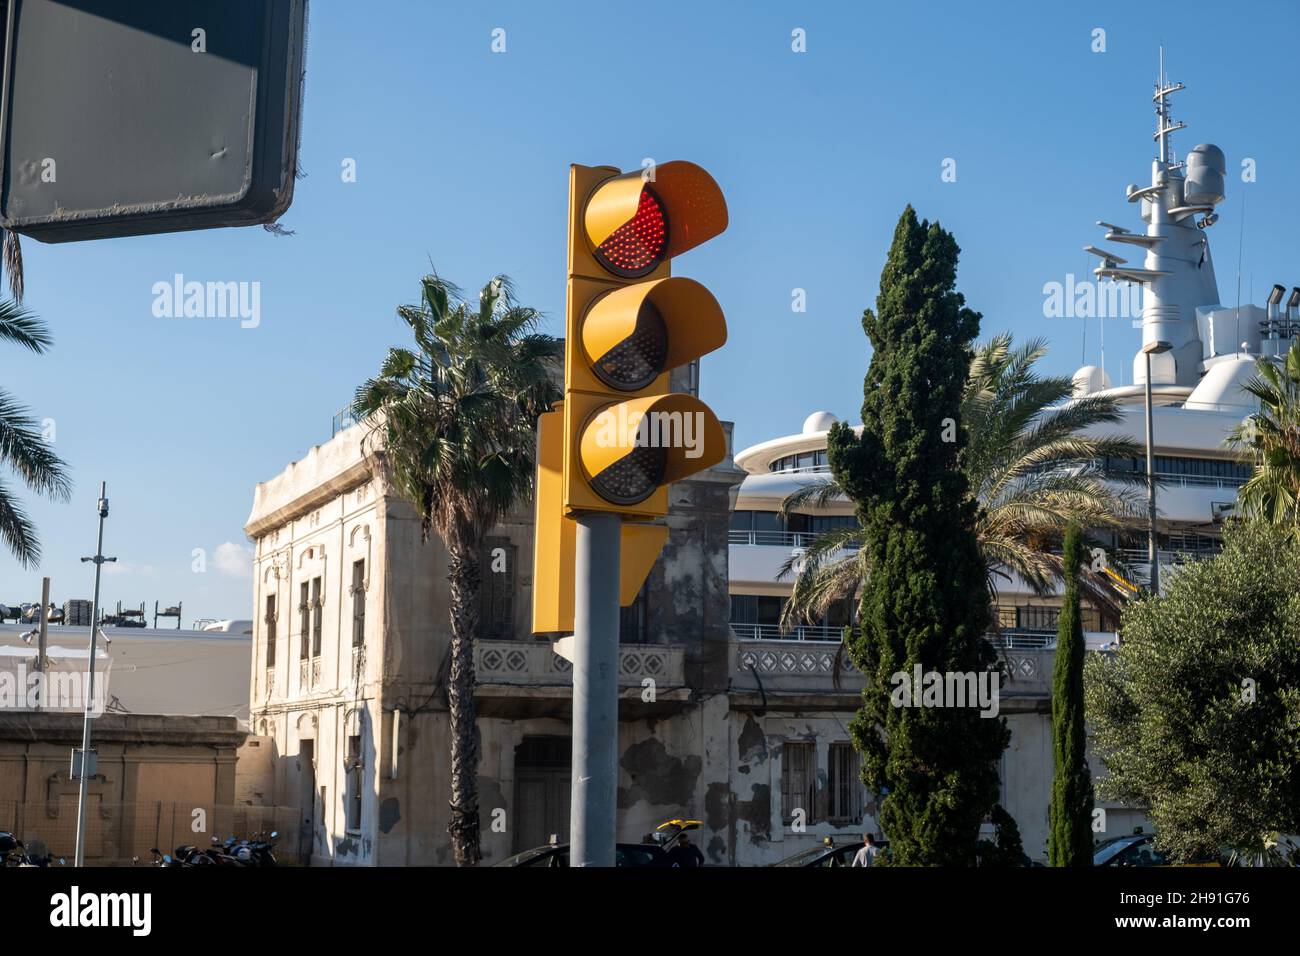 Barcellona, Spagna - 5 novembre 2021: Semaforo con luce rossa sulla strada con palme in estate, editoriale illustrativo. Foto Stock